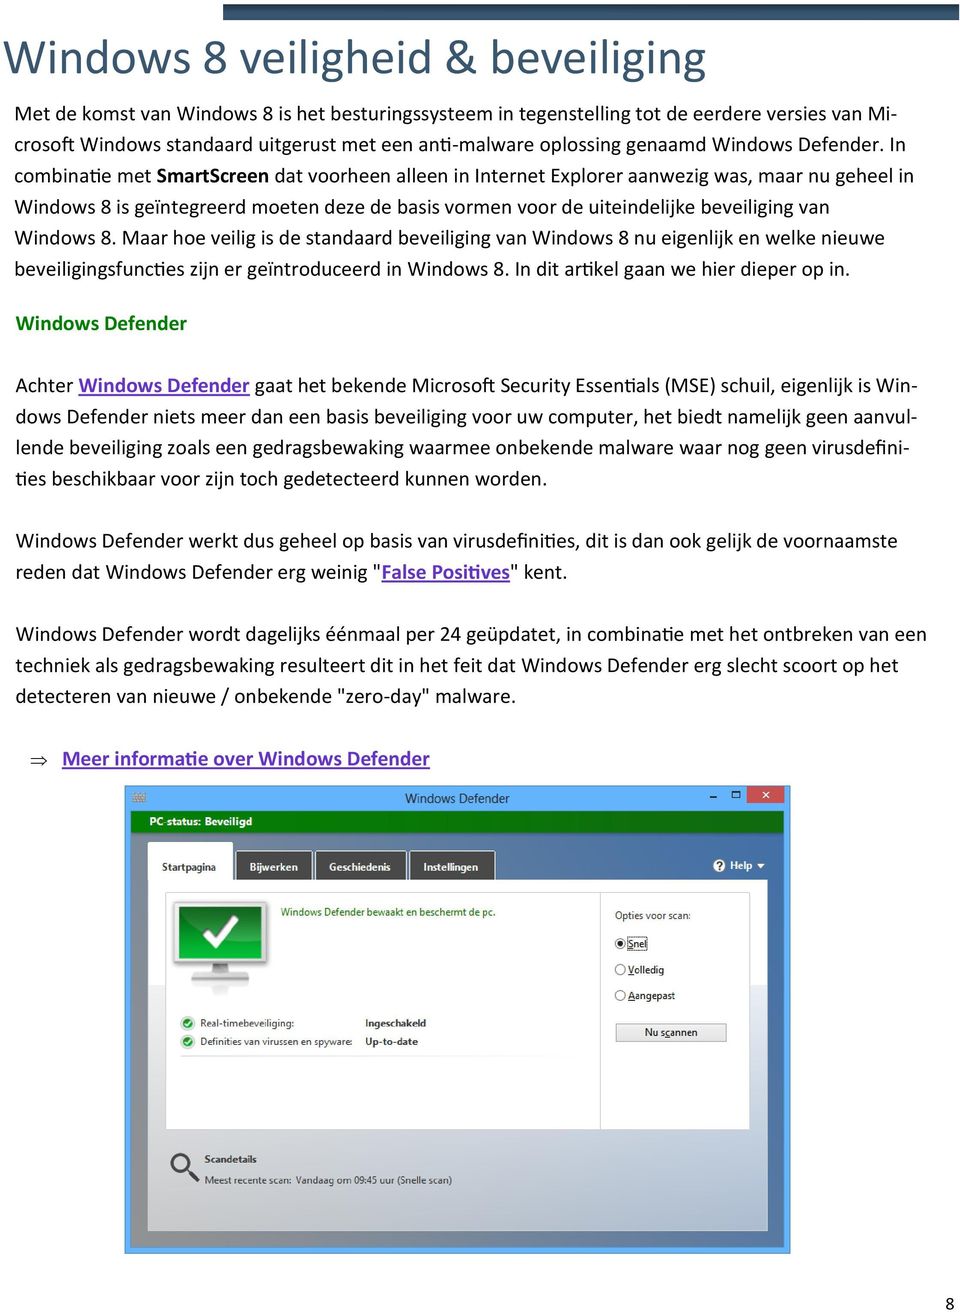 In combinatie met SmartScreen dat voorheen alleen in Internet Explorer aanwezig was, maar nu geheel in Windows 8 is geïntegreerd moeten deze de basis vormen voor de uiteindelijke beveiliging van